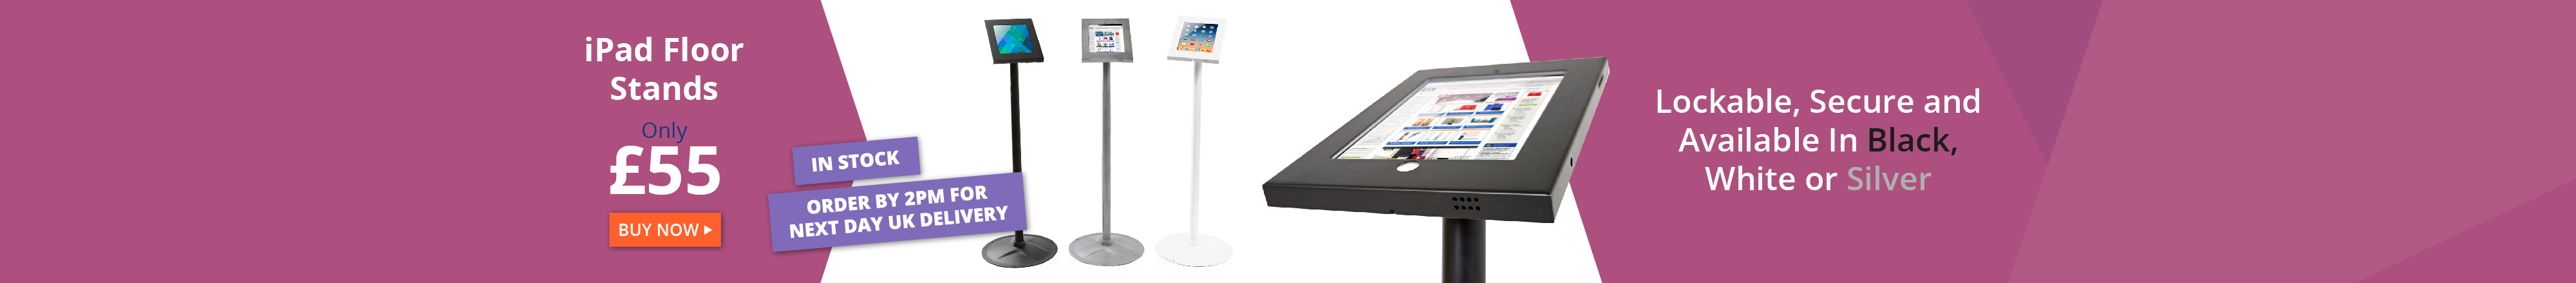 iPad Floor Stands XL Displays_2019